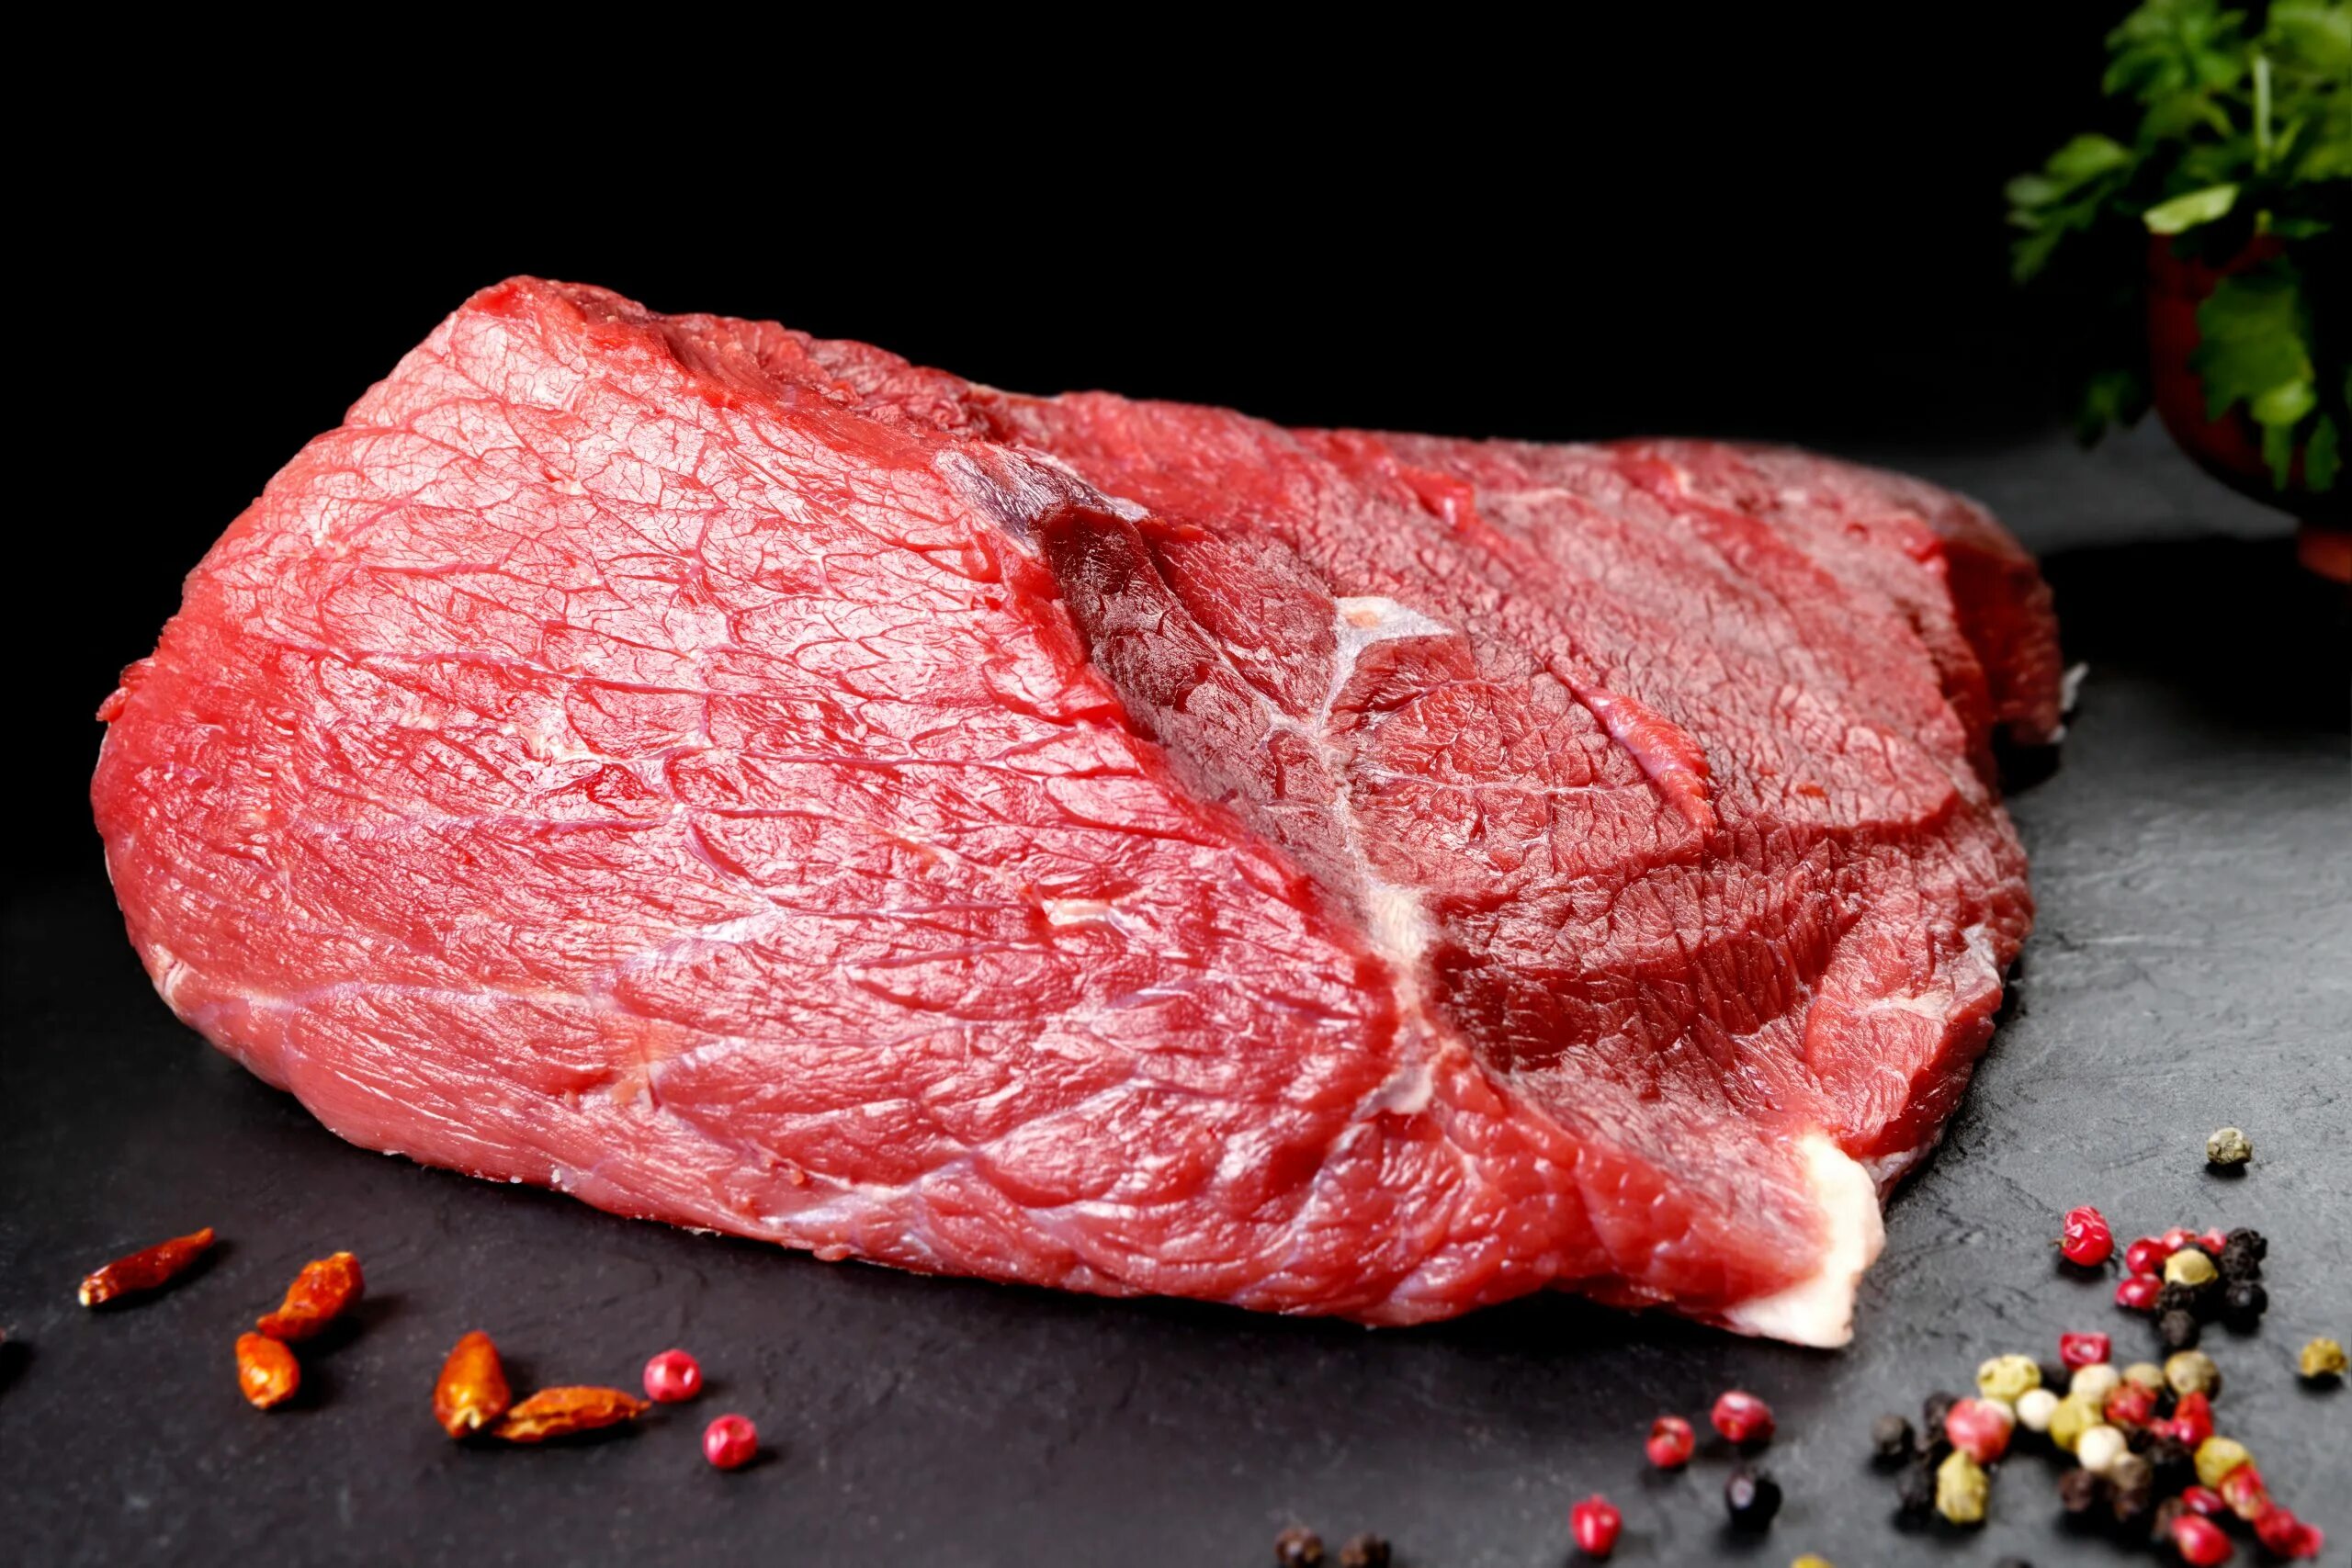 Кусок говядины на черном фоне. Мясо шея. Кусок красного мяса. Мясо говядины на черном фоне. Сонник сырое мясо без крови